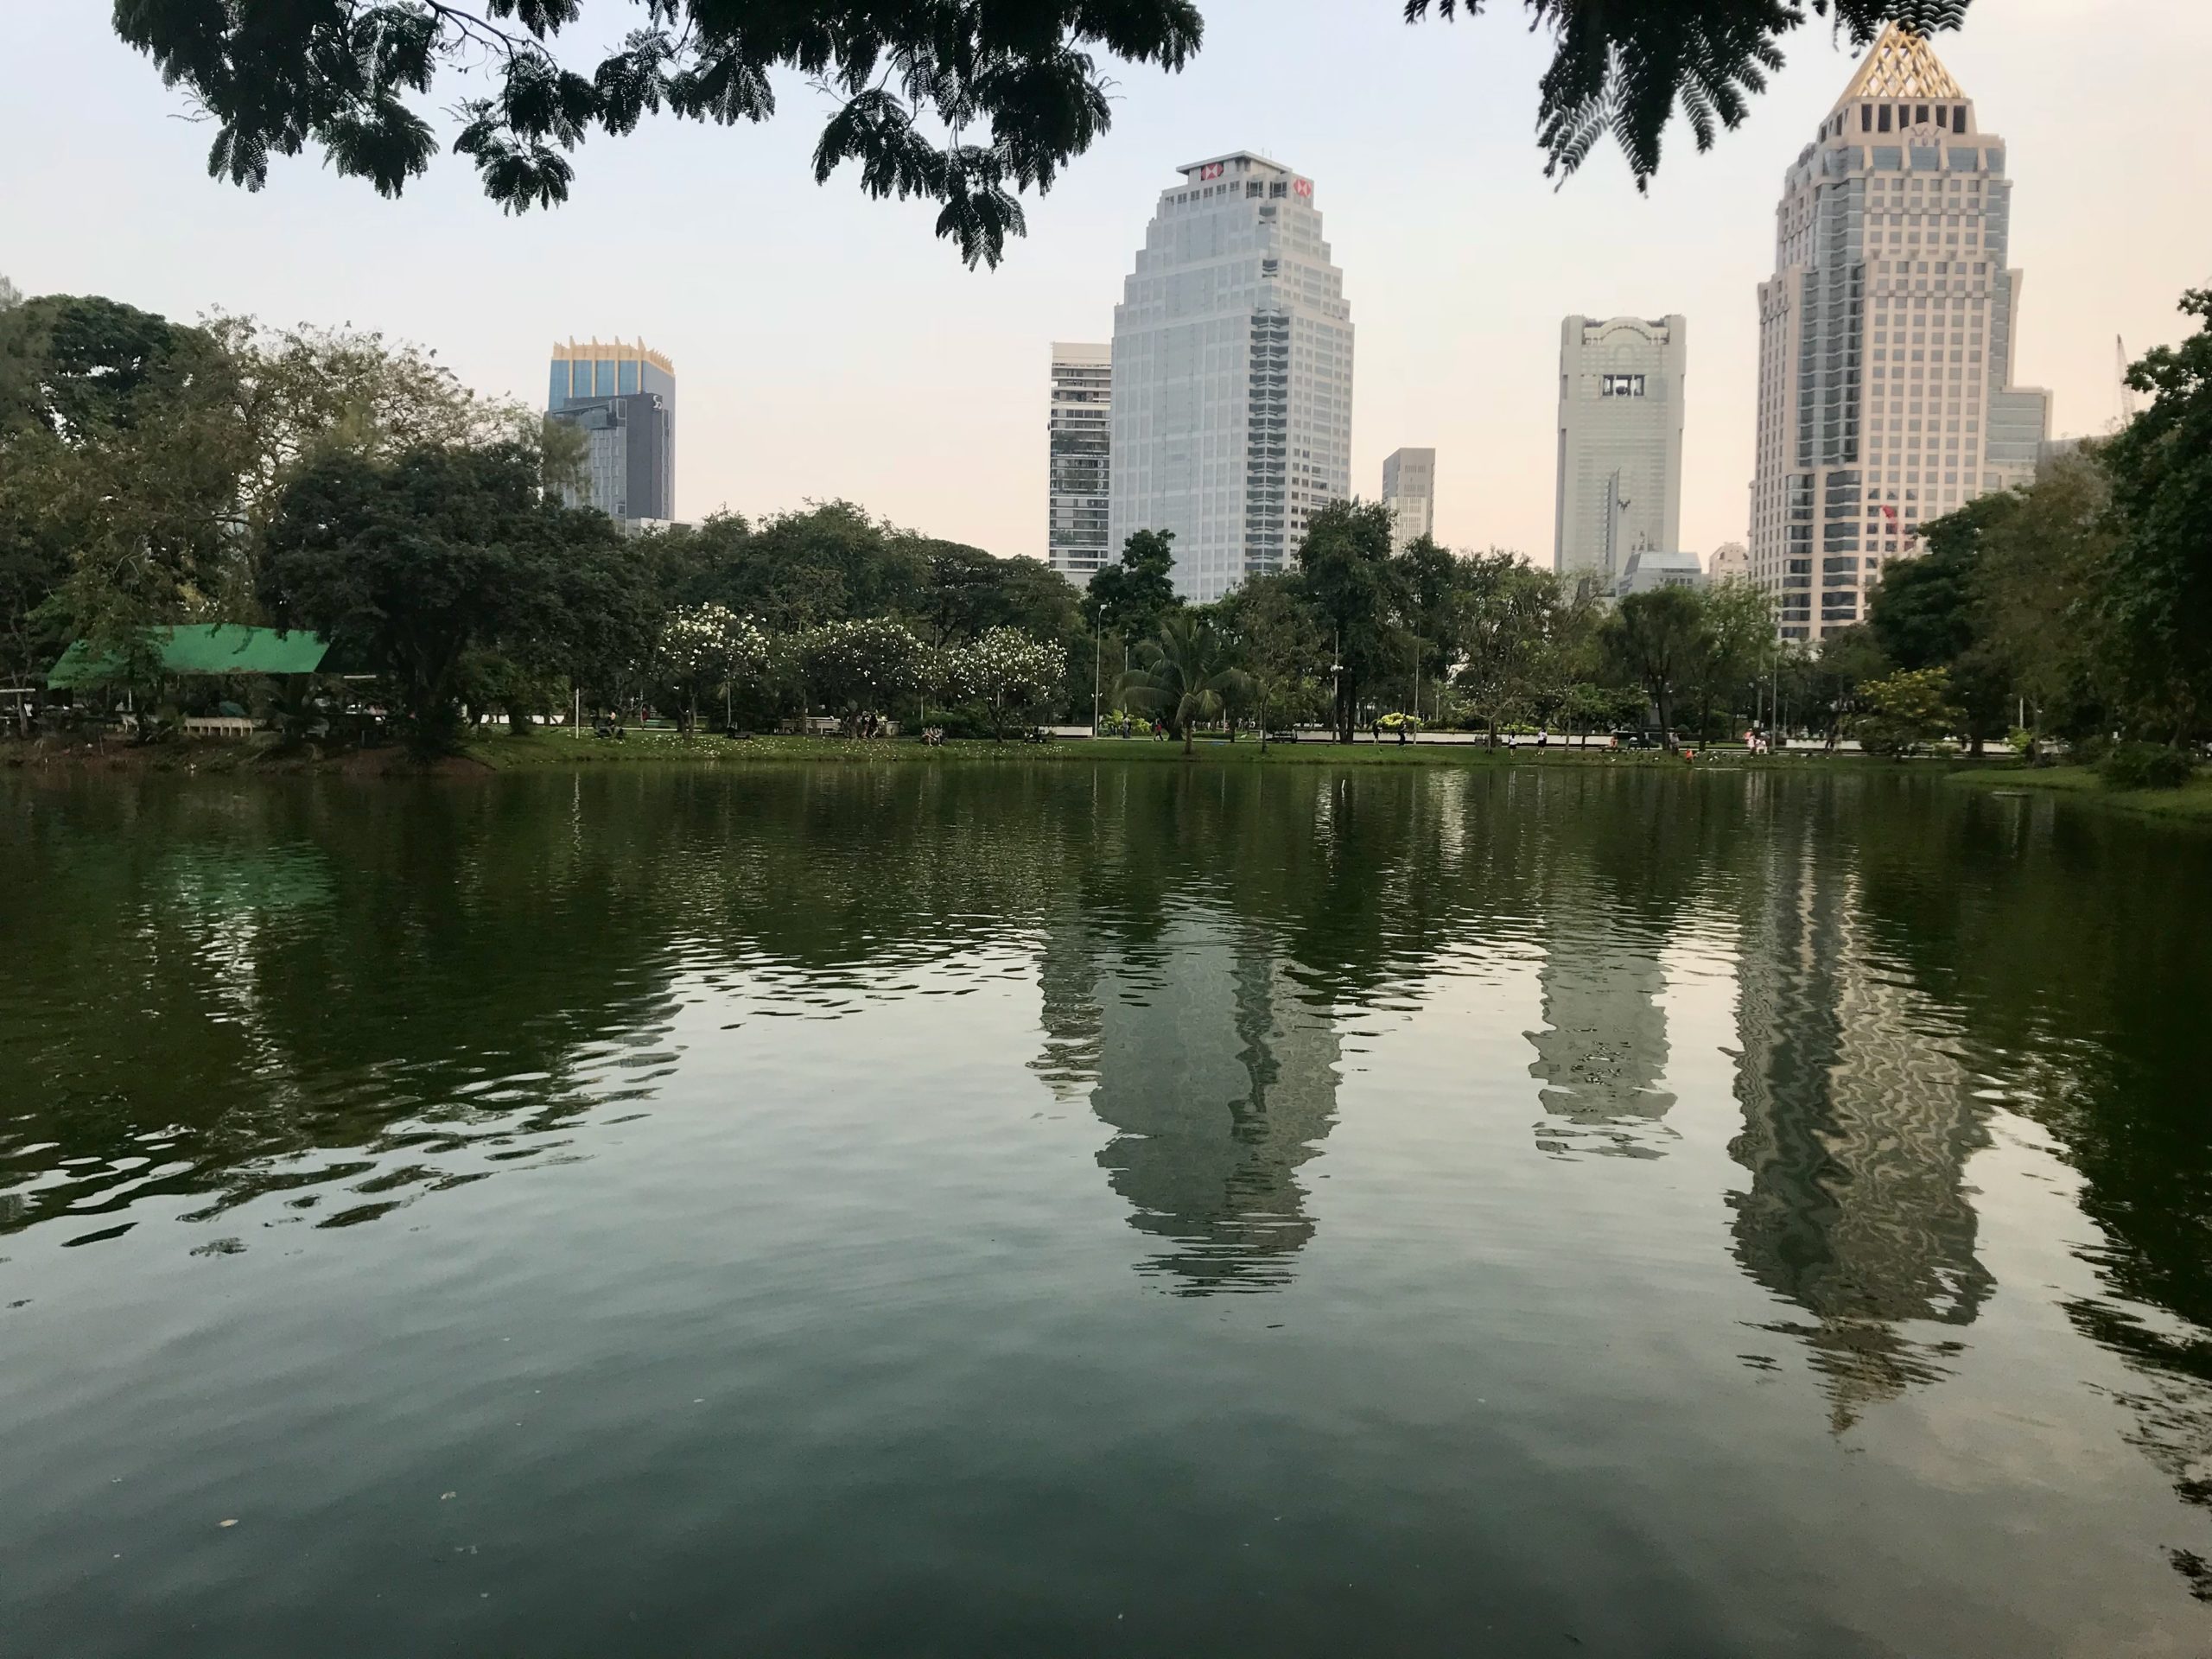 Reflets des gratte-ciel de Bangkok dans l'eau calme du lac du parc Lumpini en fin de journée.